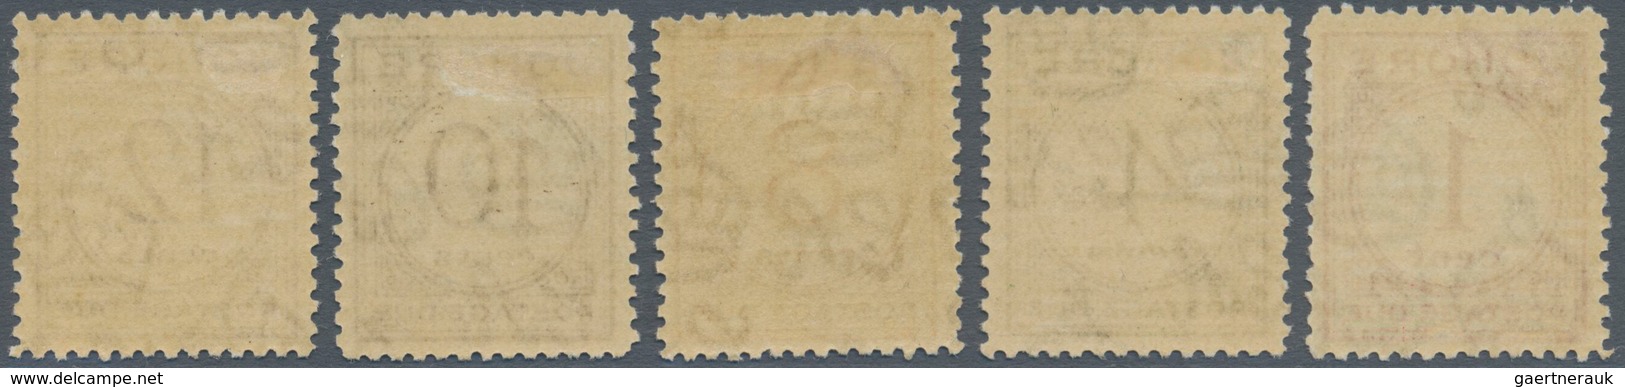 Malaiische Staaten - Johor-Portomarken: 1938, Postage Dues Complete Set Of Five, Mint Lightly Hinged - Johore